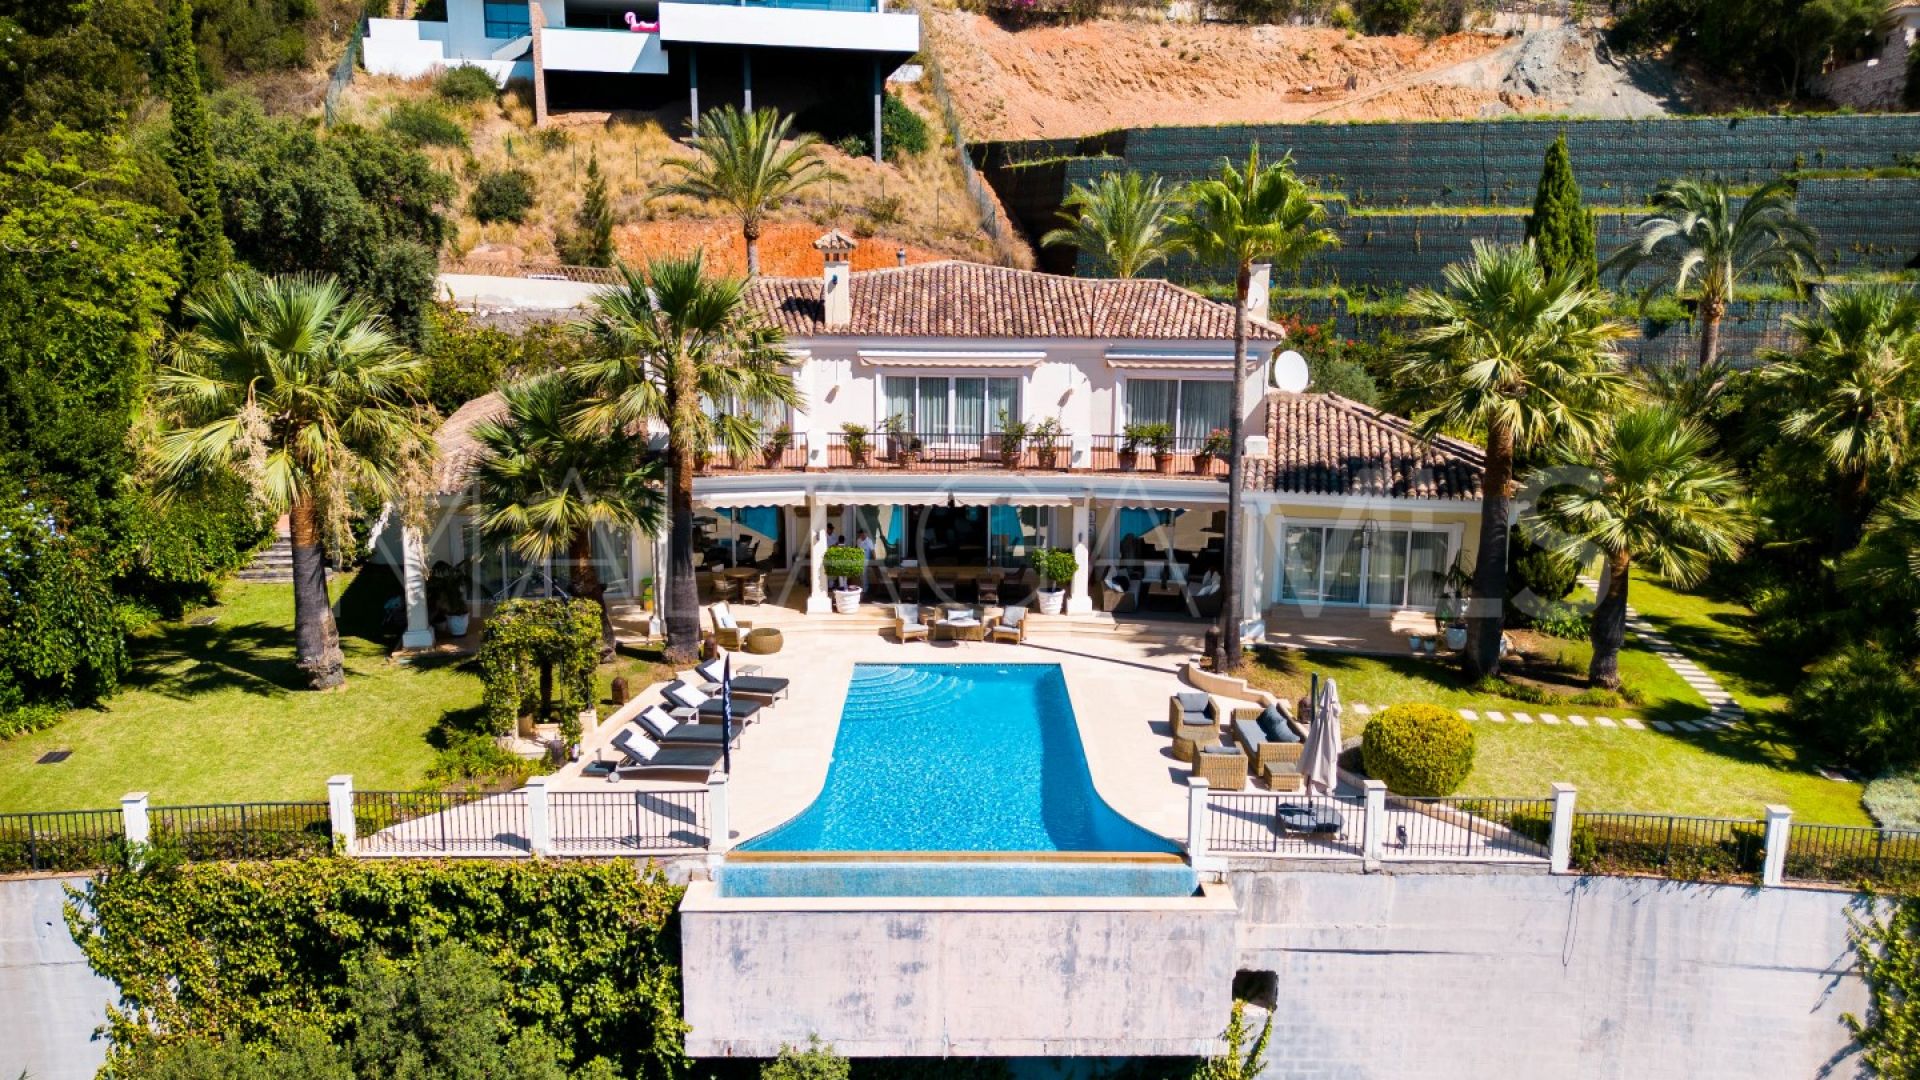 El Herrojo villa for sale